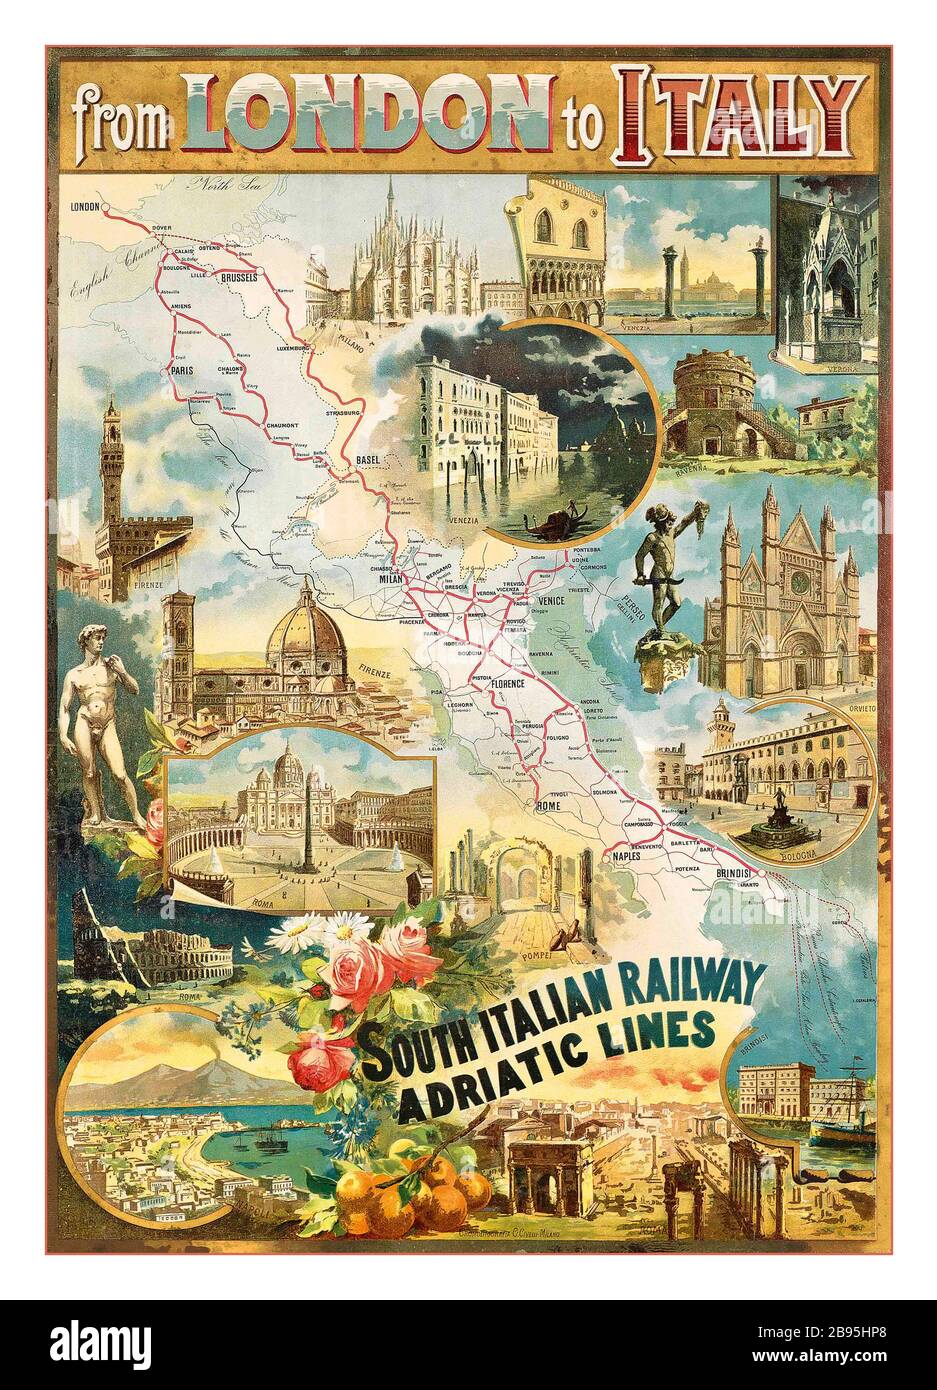 Da Londra all'Italia '900 Railway Transport Vintage Travel Poster '900 DA LONDRA ALL'ITALIA con litografia delle linee adriatiche South Italian Railway, stampata da G.Civelli, Milano, Foto Stock